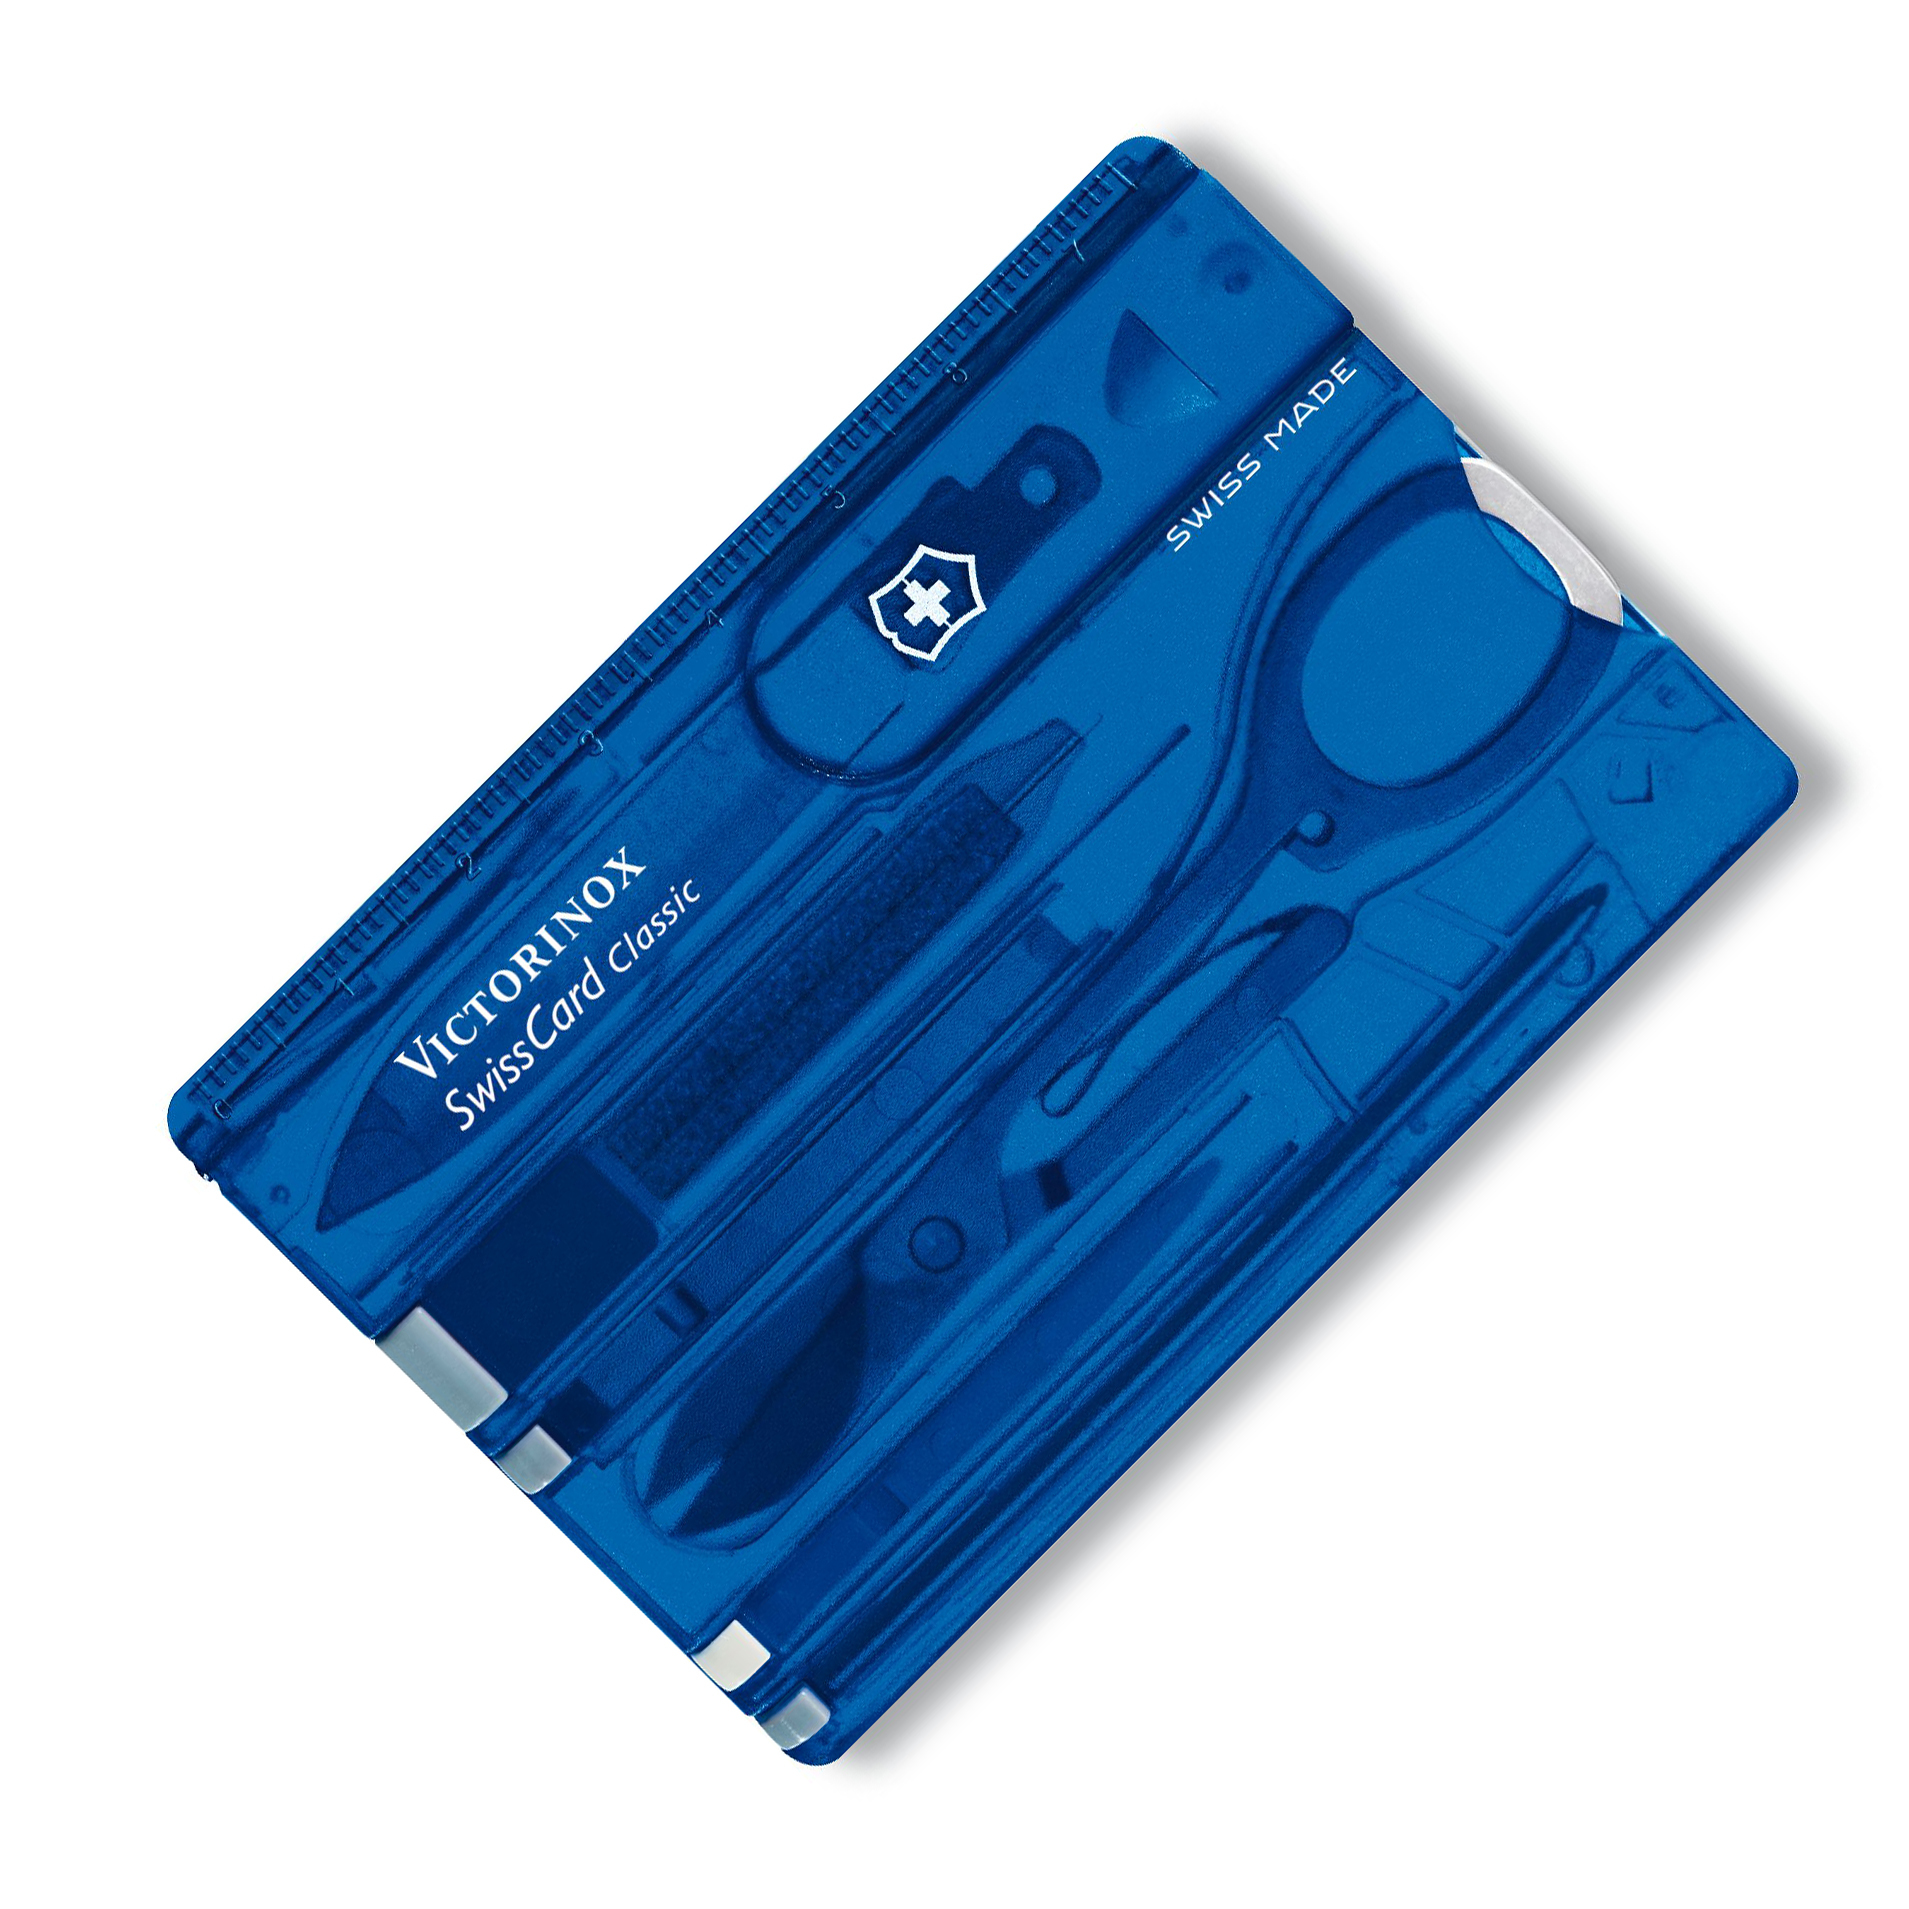 Швейцарская карта Victorinox SwissCard, сталь X50CrMoV15, рукоять ABS-Пластик, синий пилка триммер металлическая для ногтей с защитным колпачком 16 см